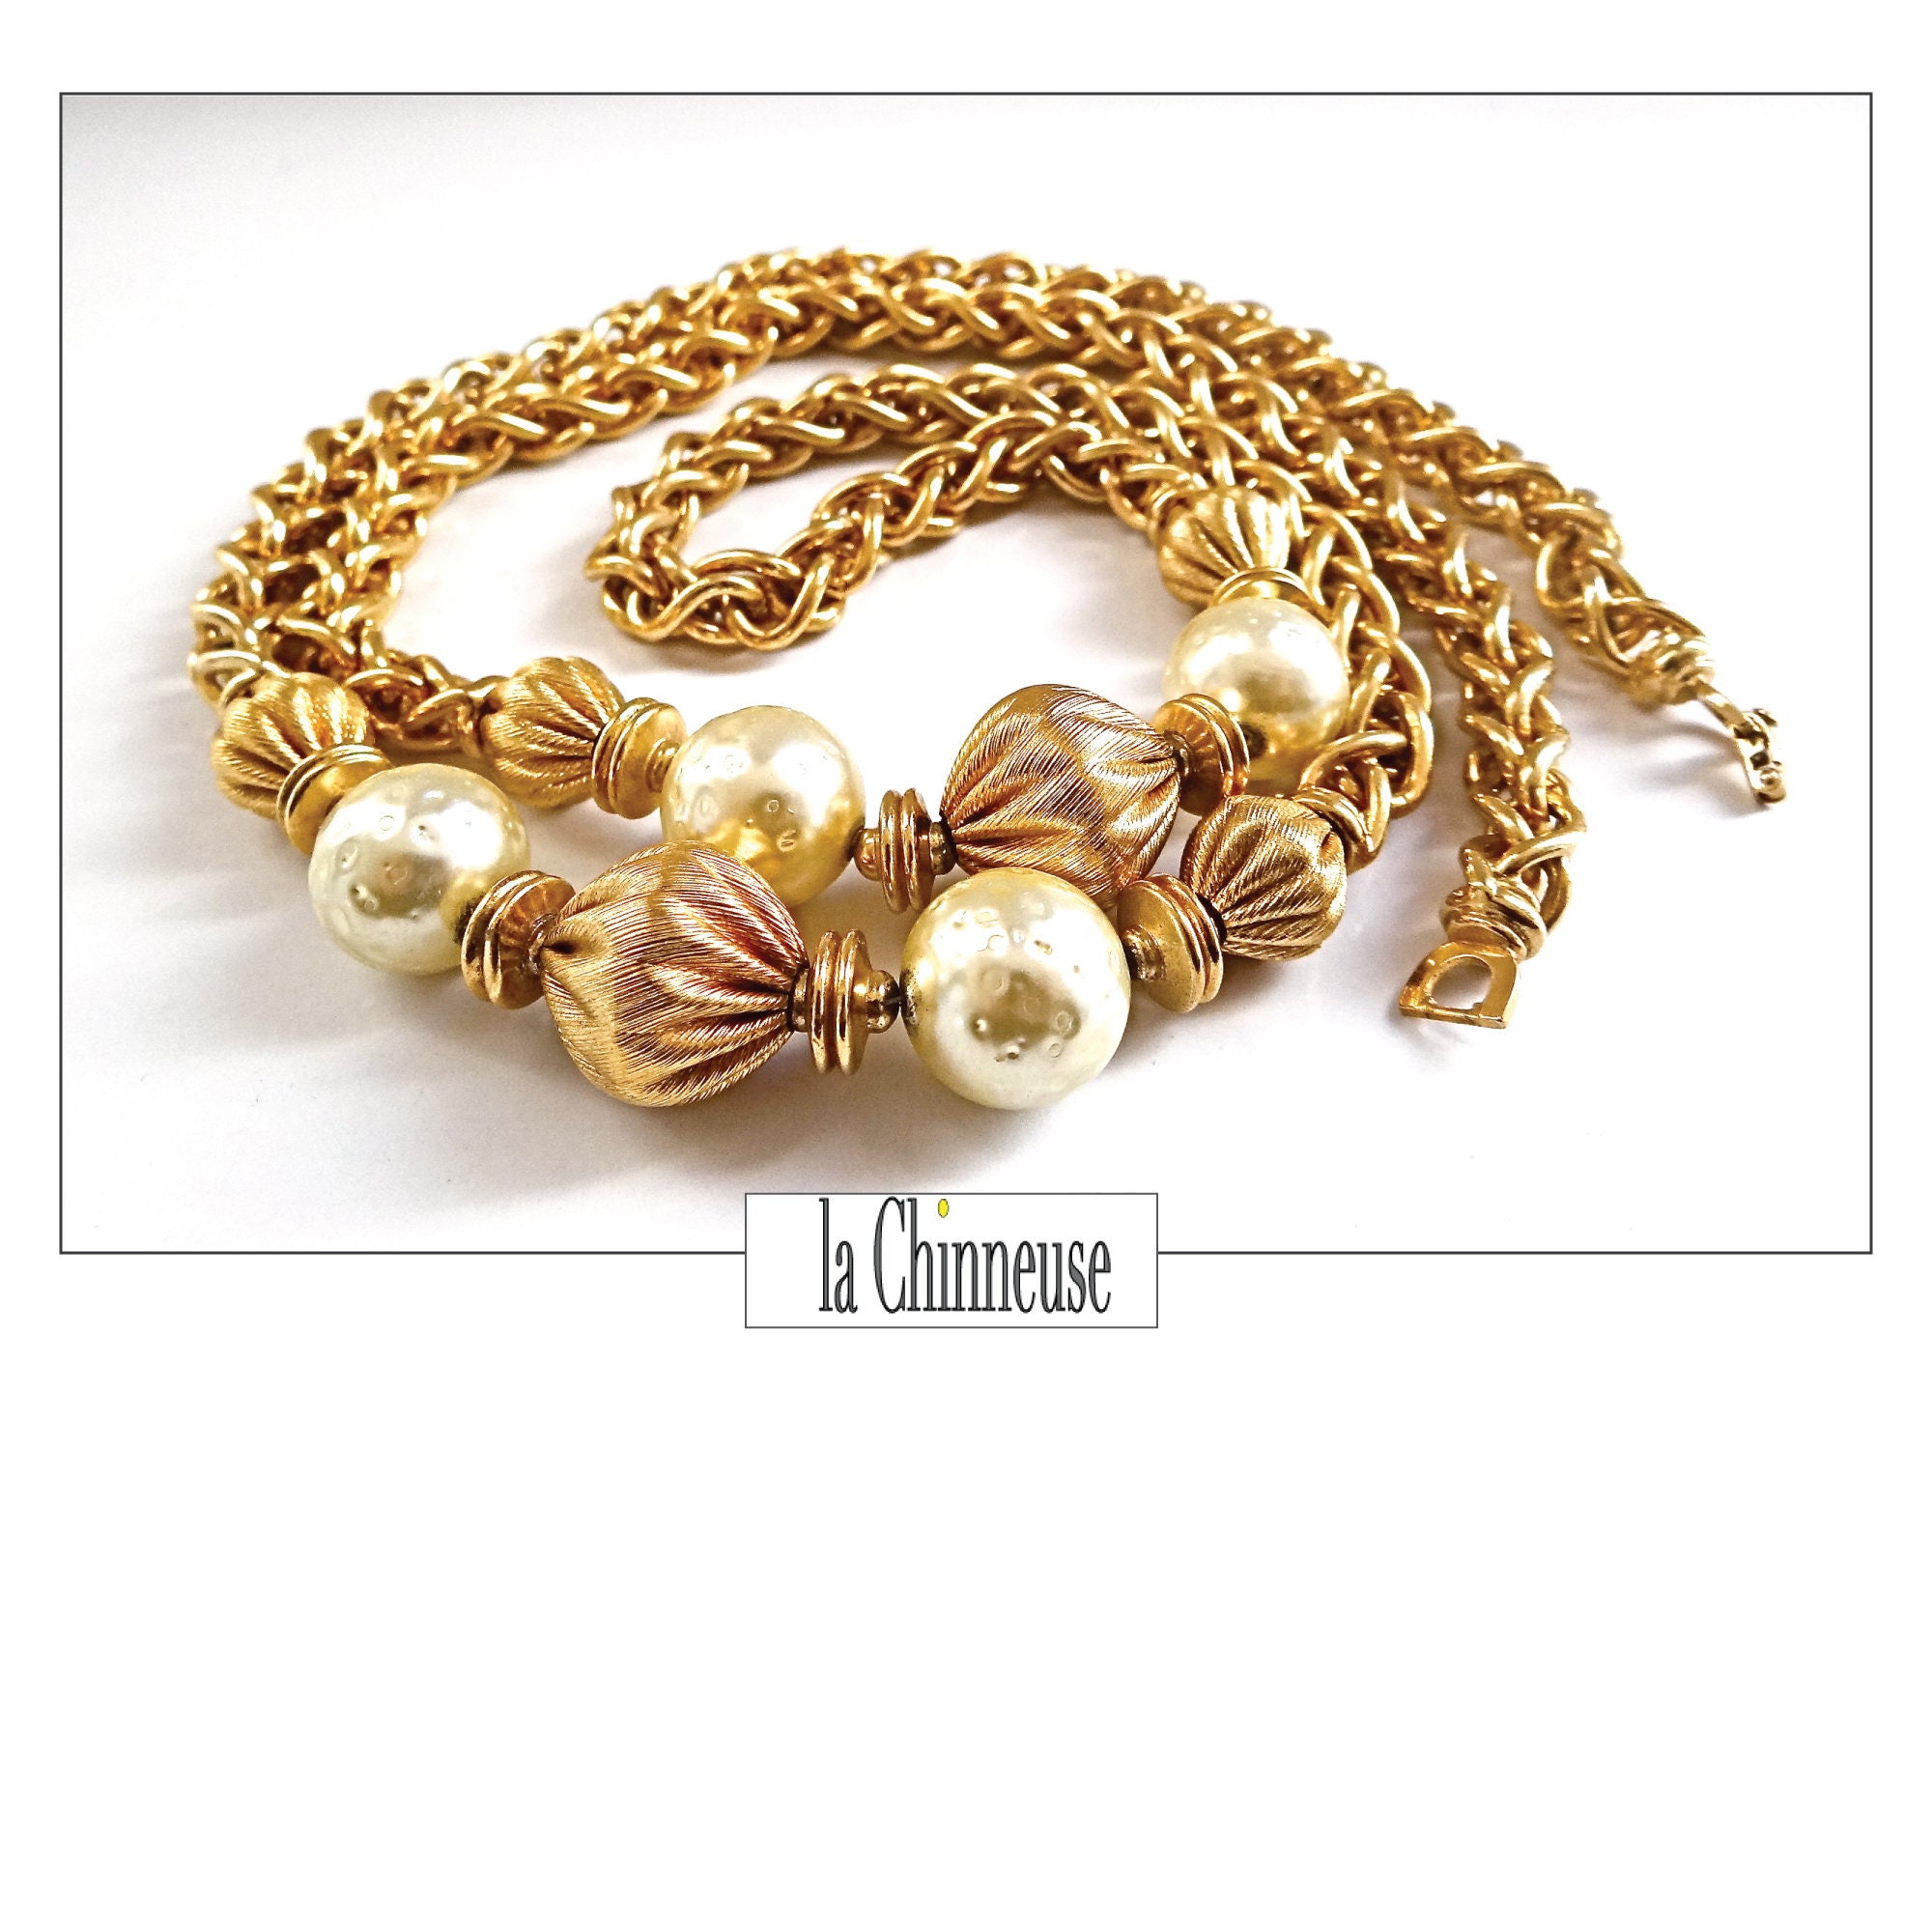 Christian Dior Sautoir Diamond Necklace